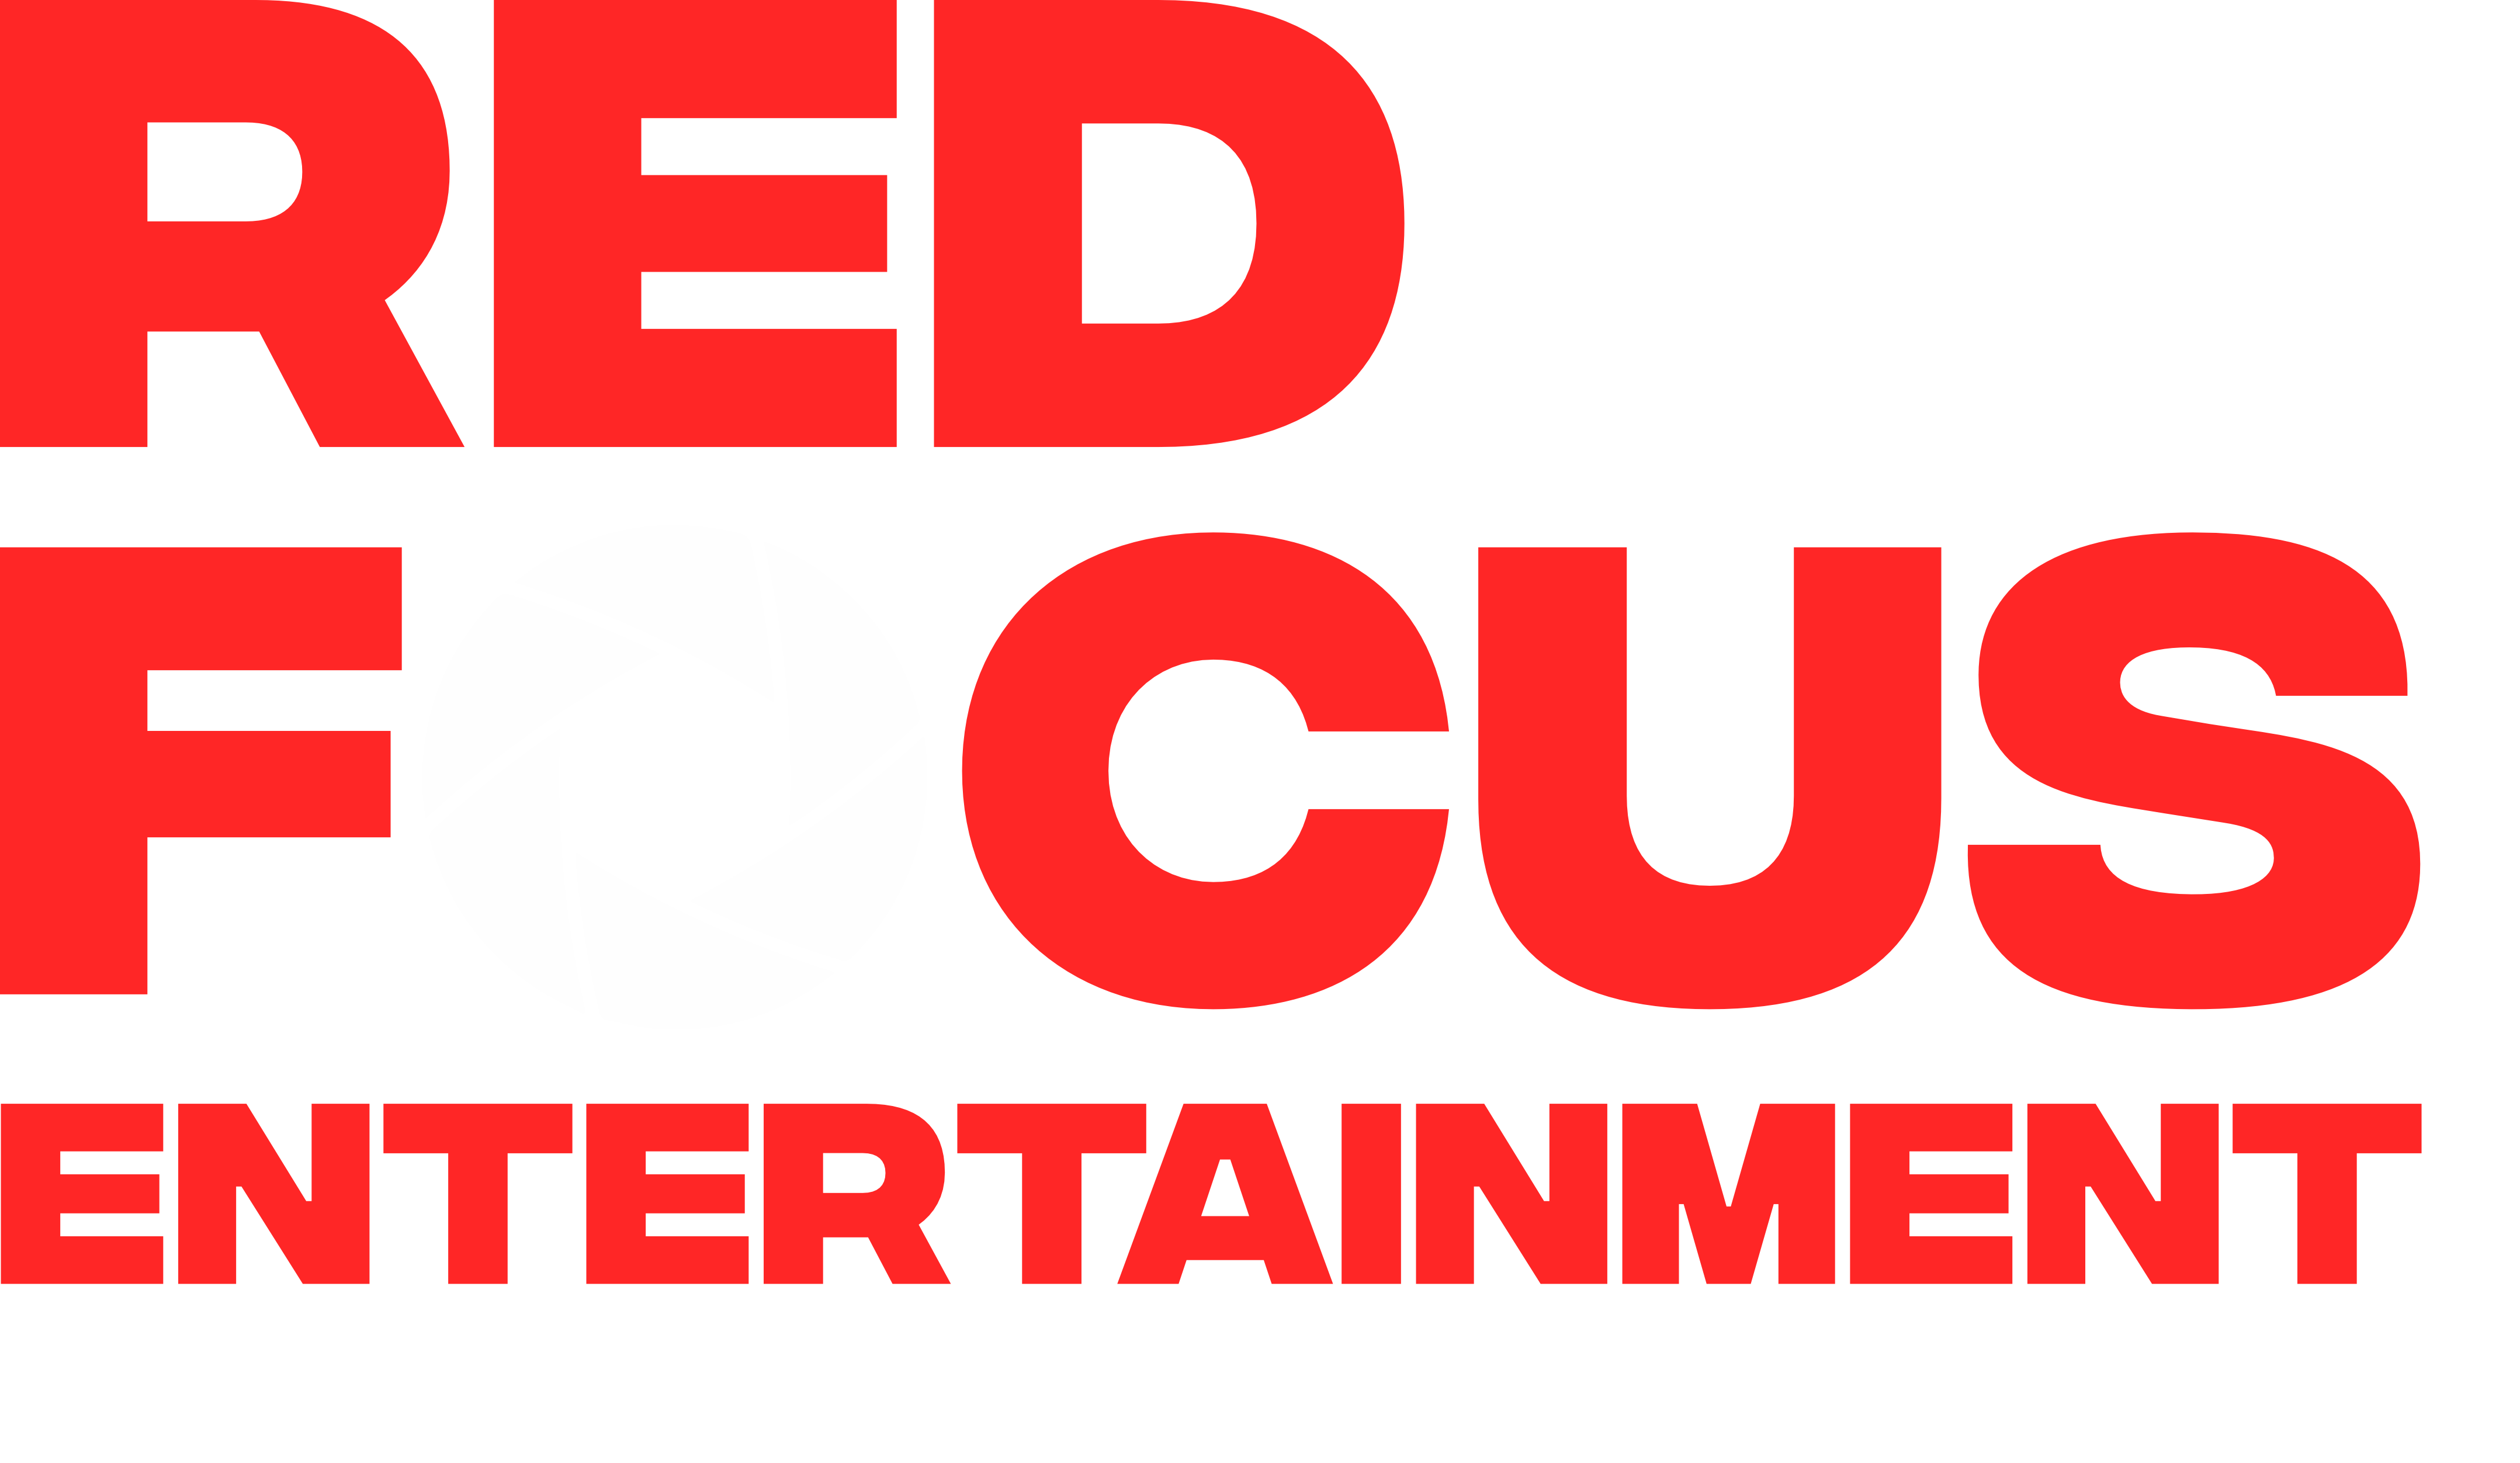 Red Focus Entertainment